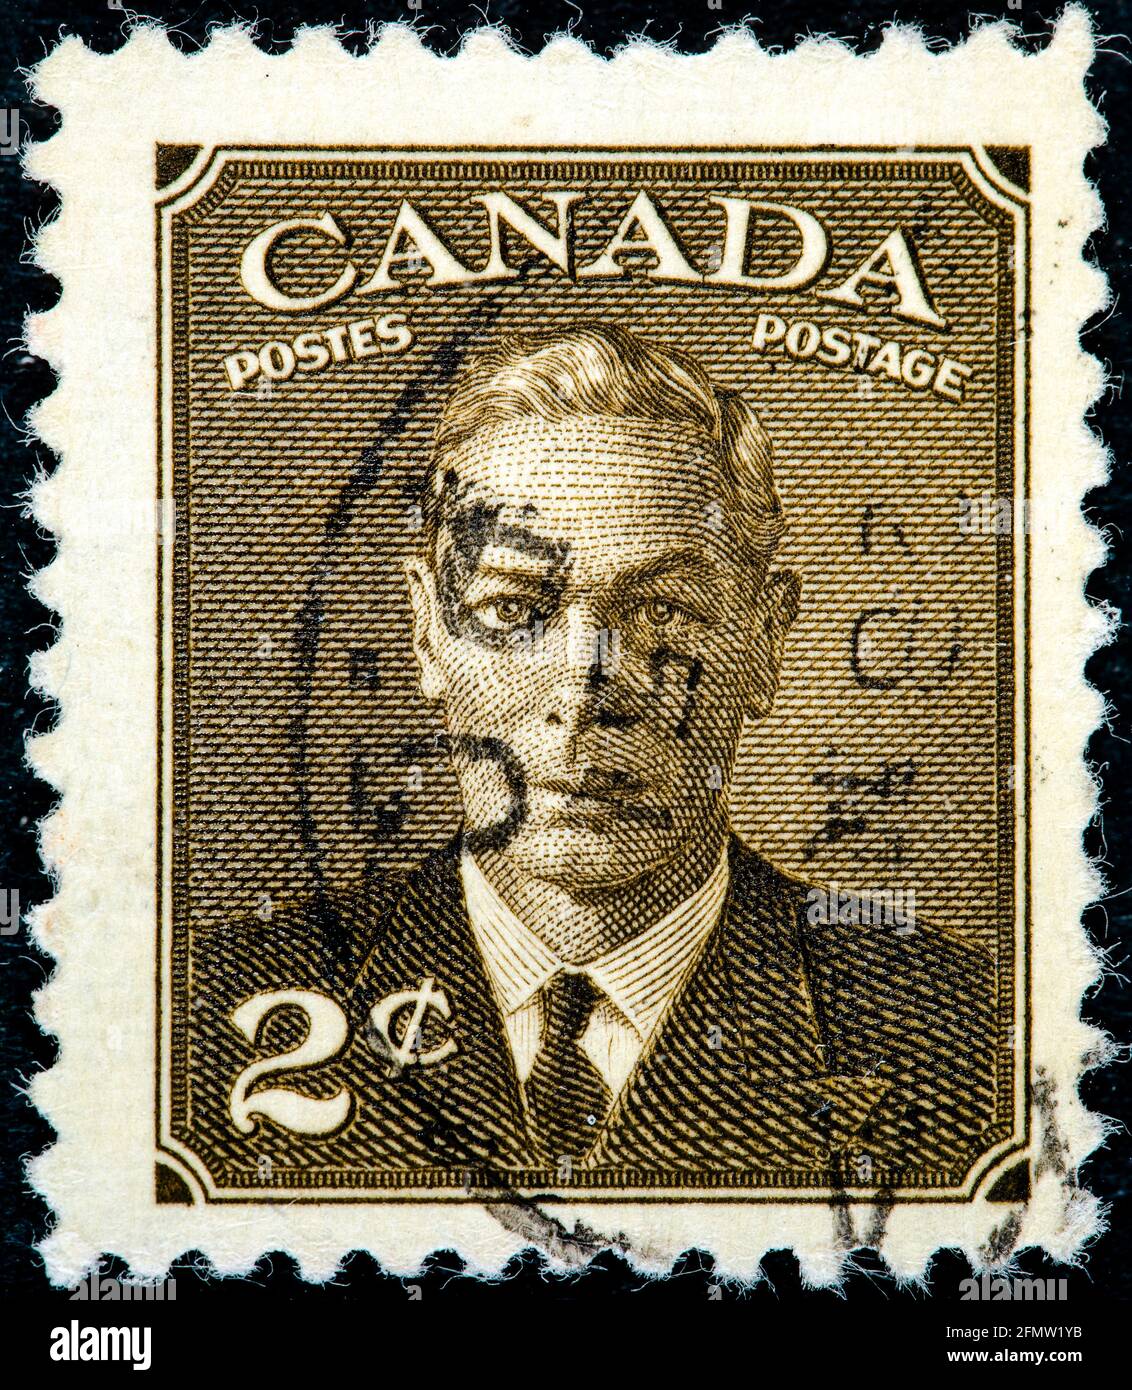 KANADA - UM 1949 eine in Kanada gedruckte Briefmarke zeigt König George VI., König von England, um 1949 Stockfoto